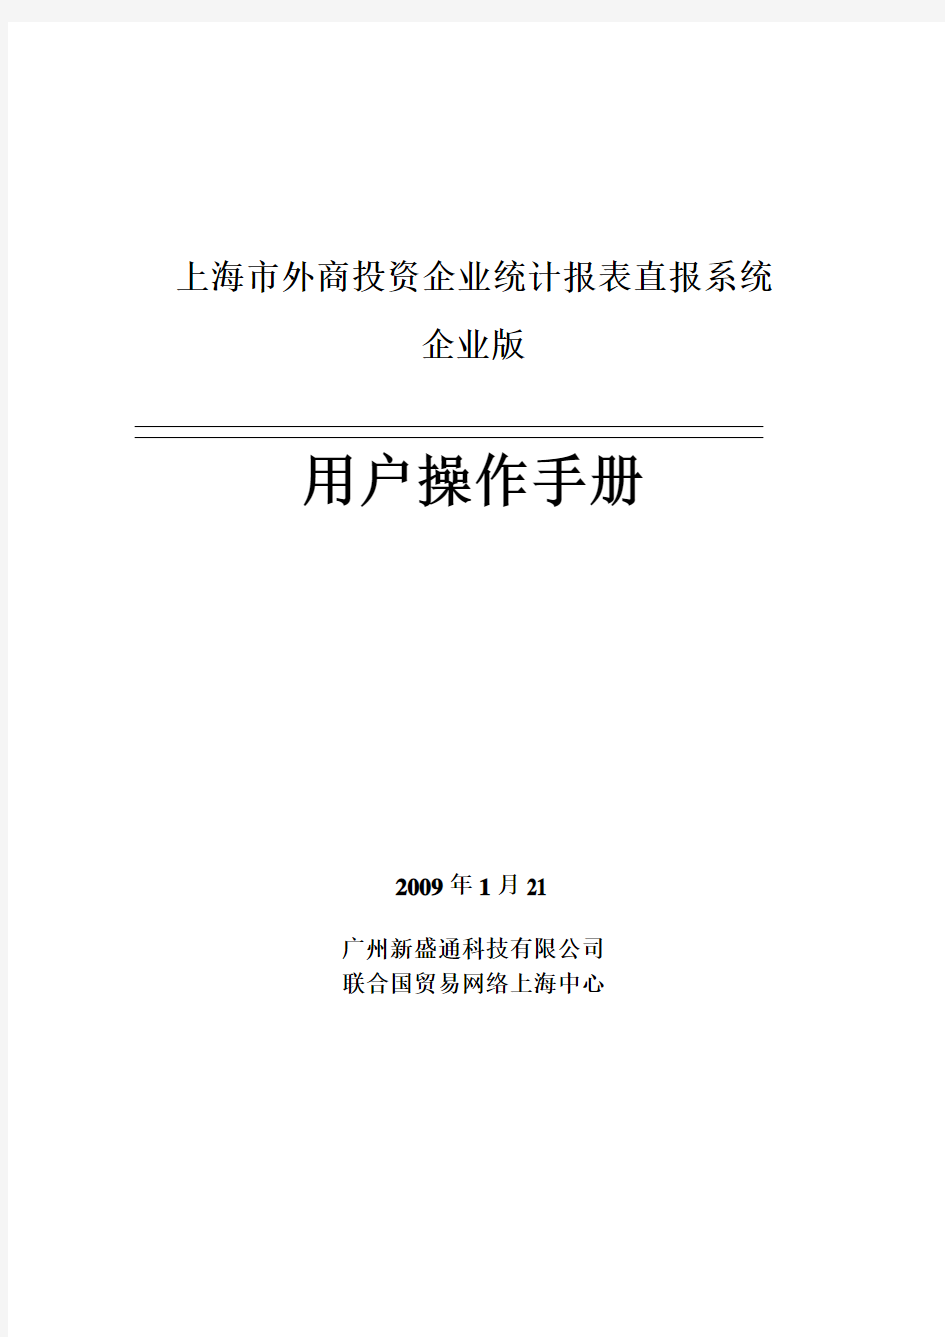 上海市外商投资企业统计报表直报系统